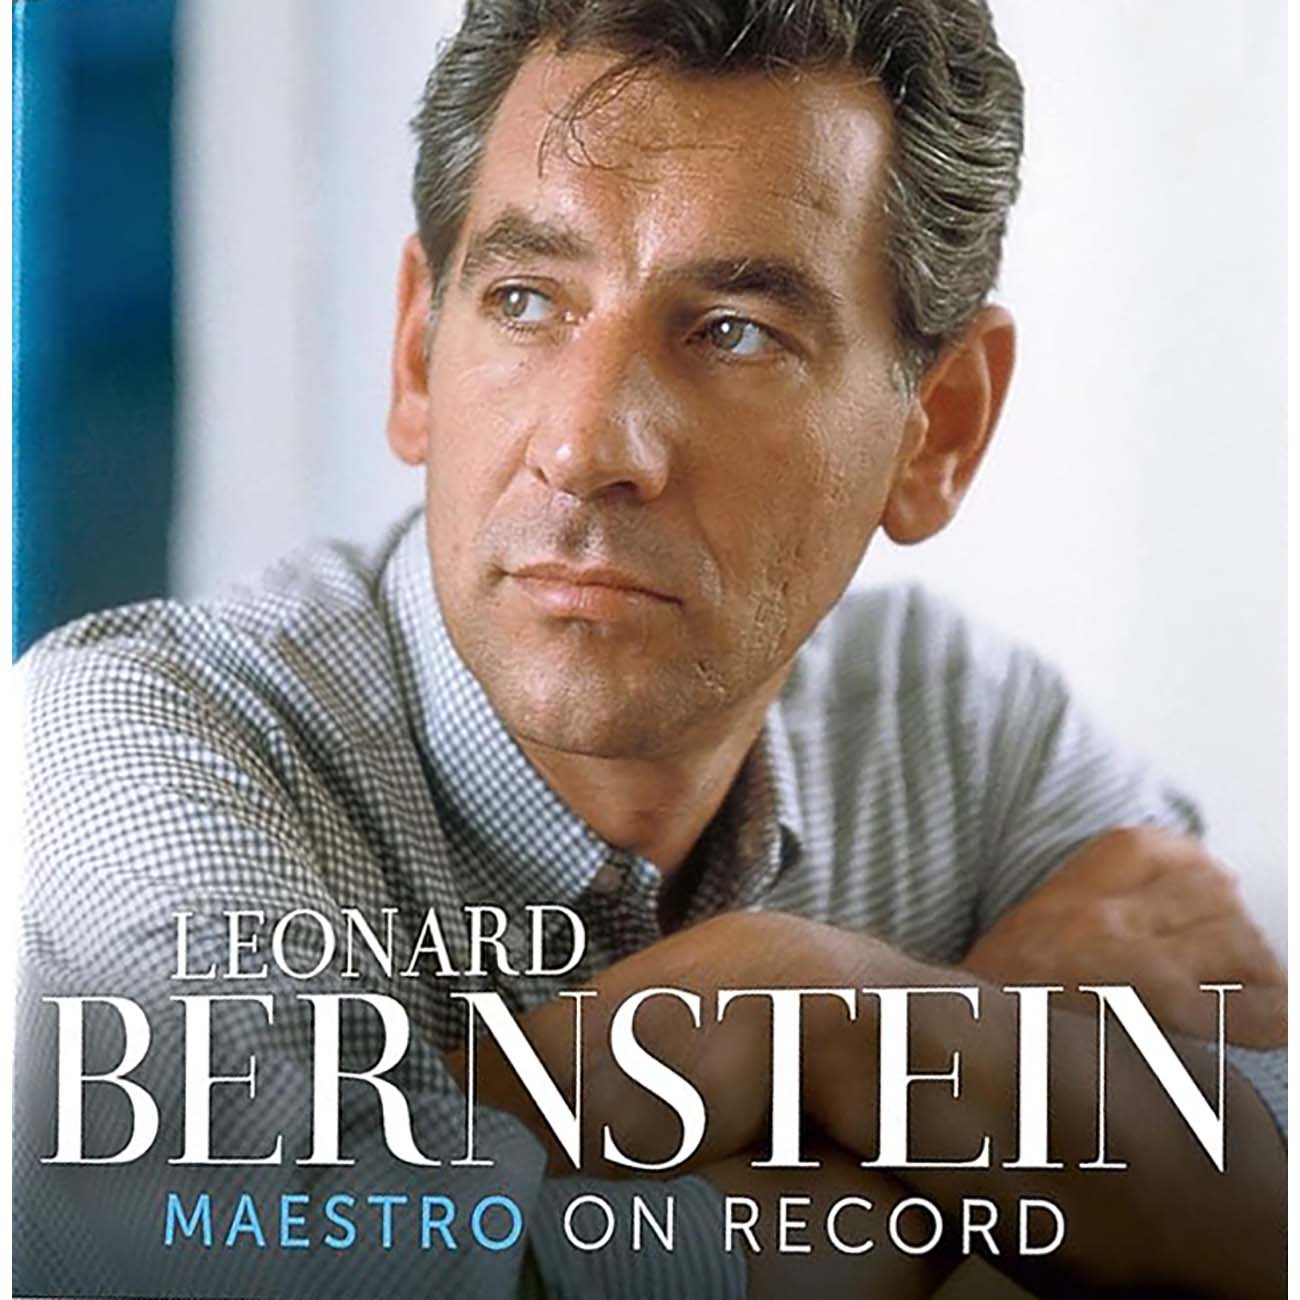 About  Leonard Bernstein